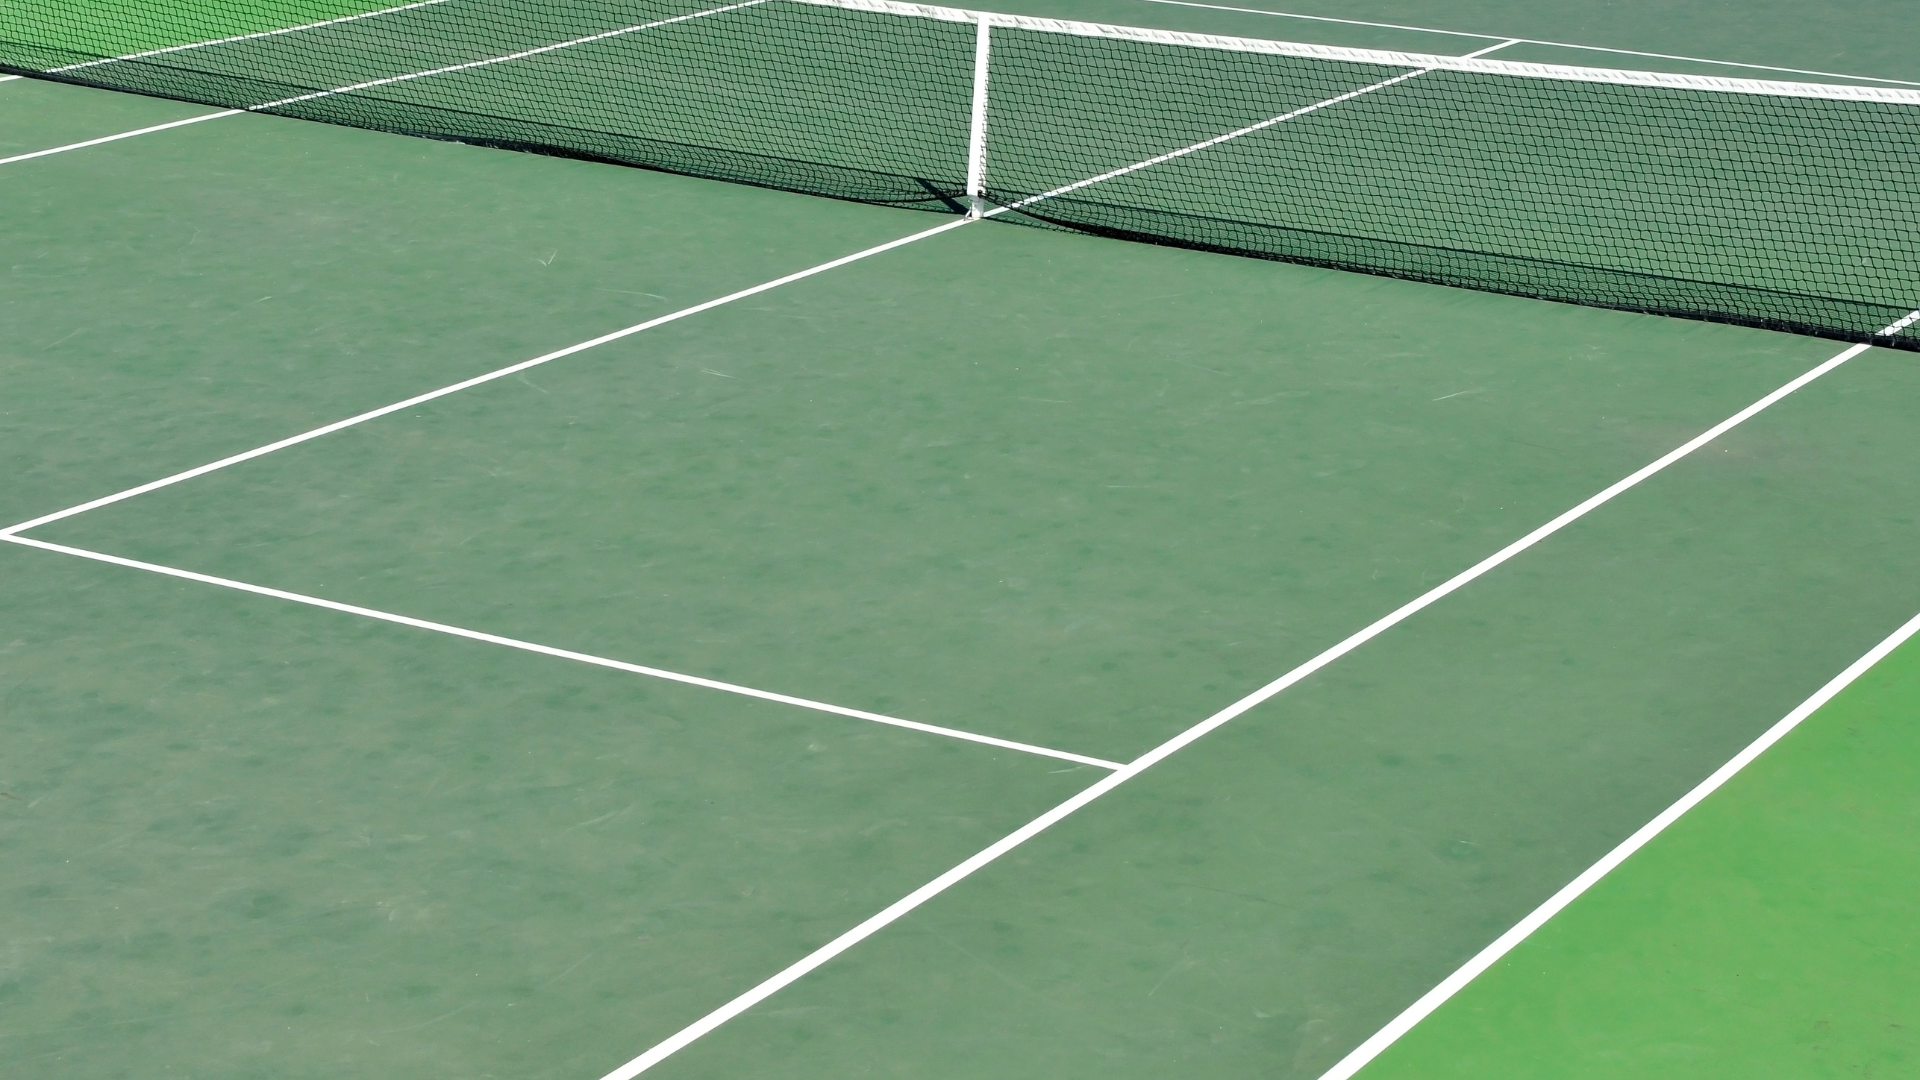 Tennis Court Maintenance Planned to Start Next Week